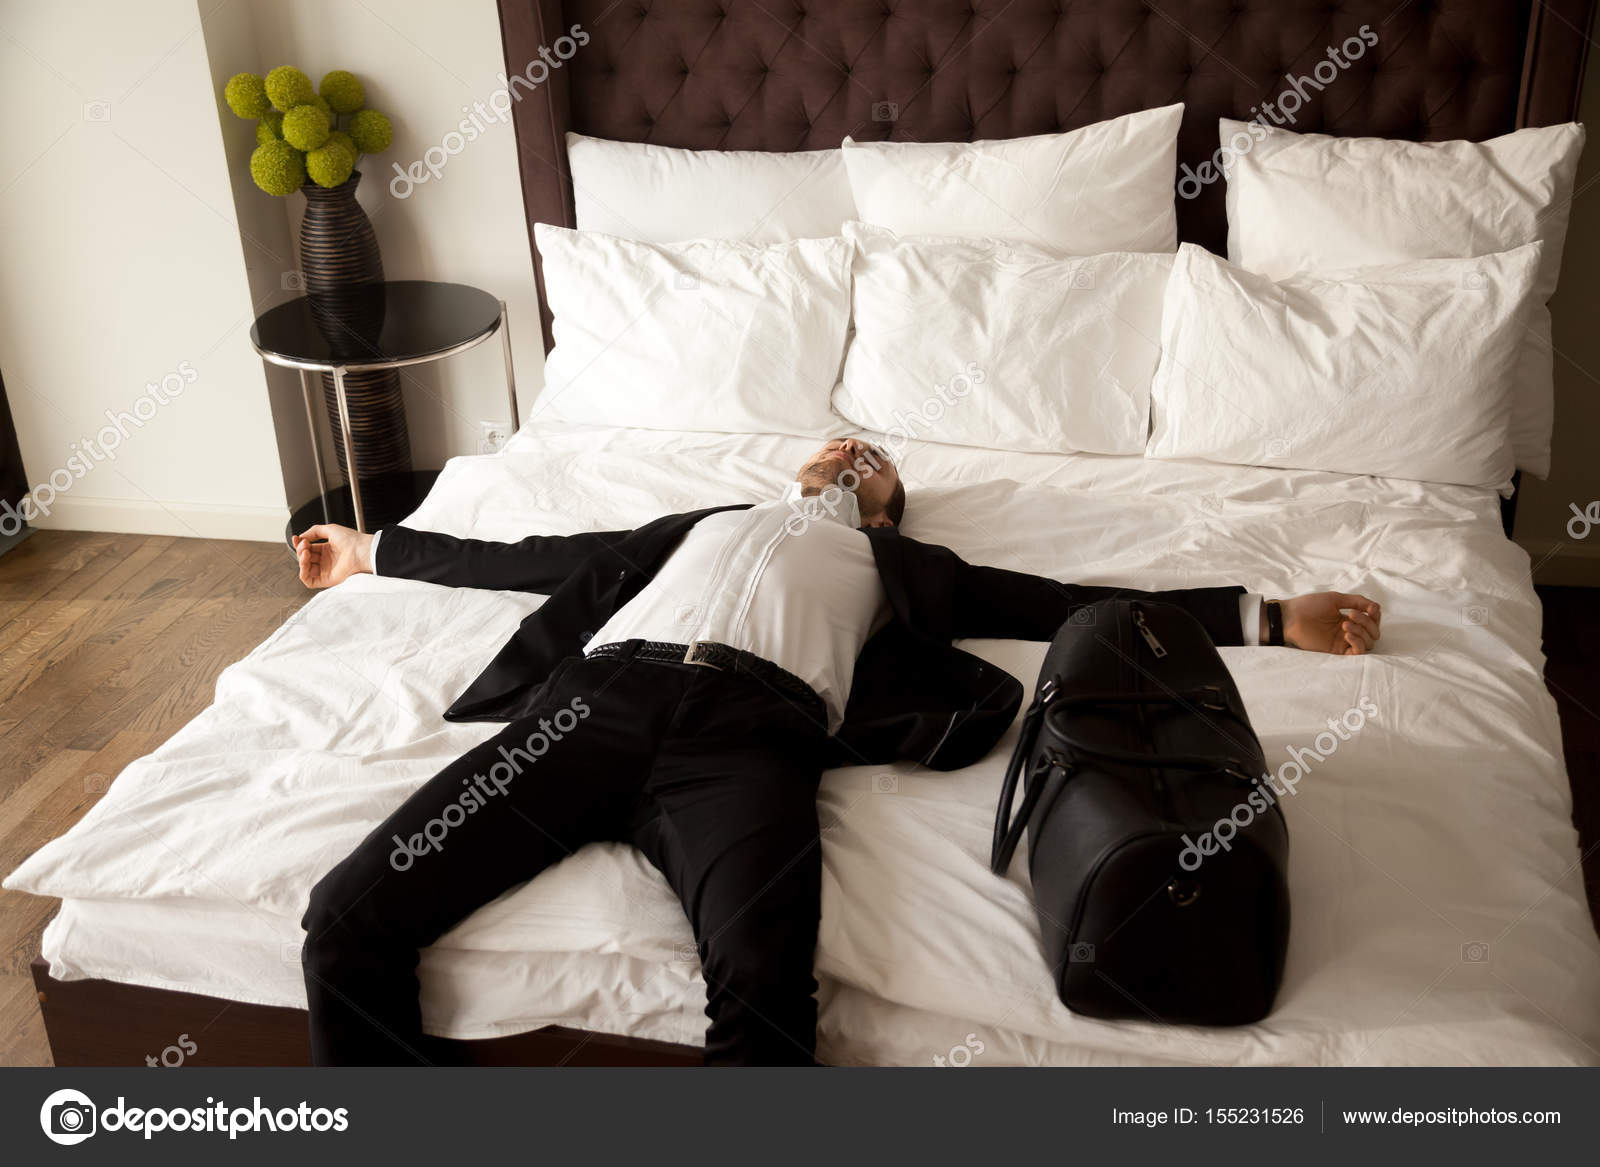 Изоляция в отеле. Парень в кровати. Парень в костюме на кровати. Мужчина в костюме лежит.